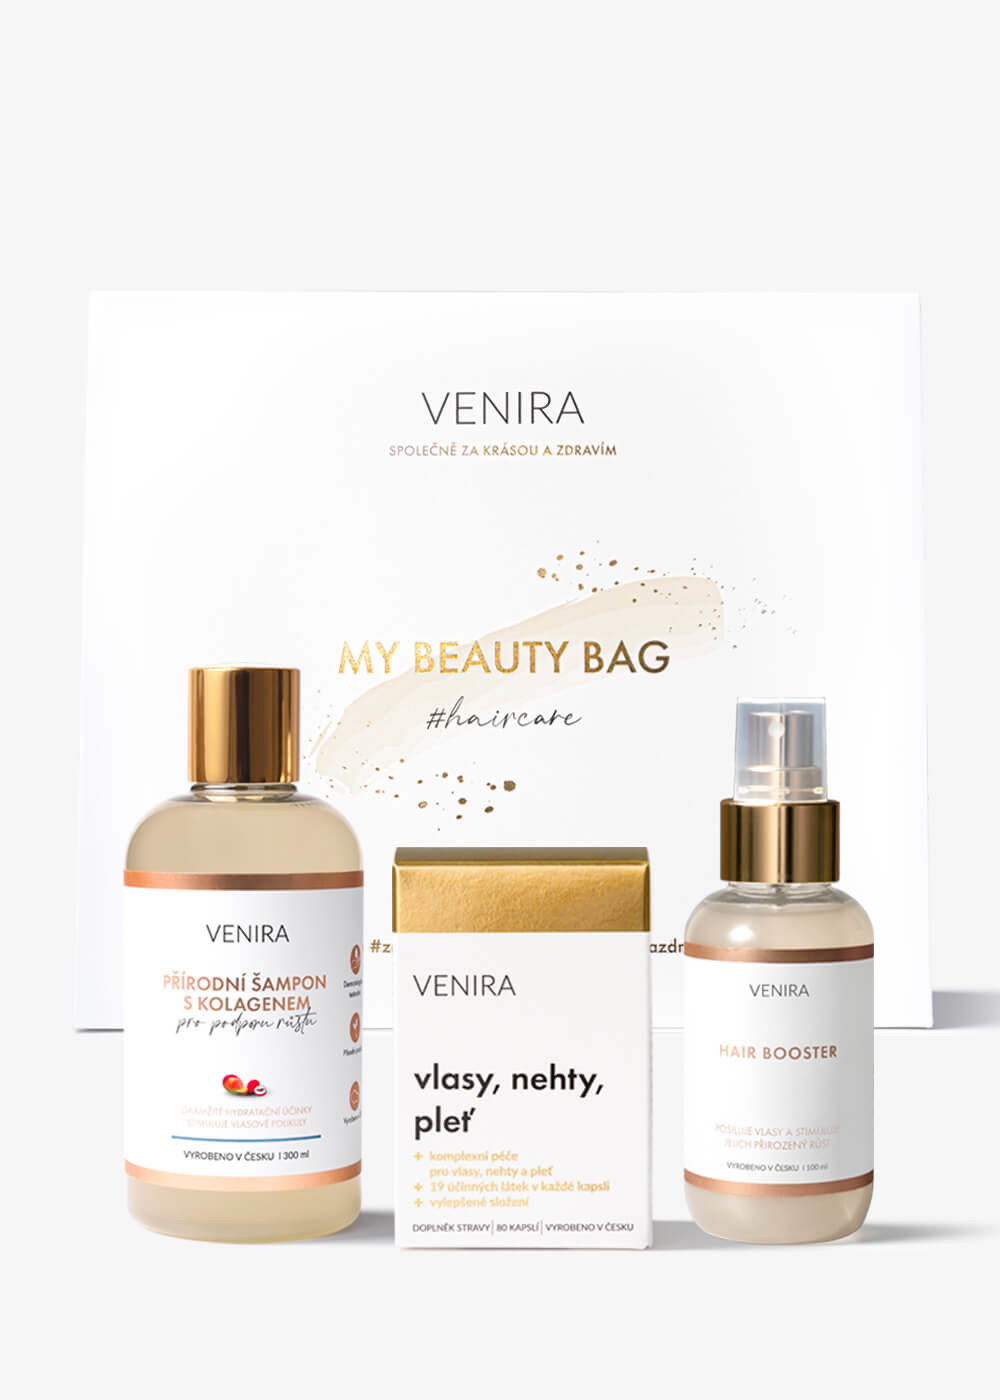 VENIRA beauty bag, dárková sada pro podporu růstu vlasů - kapsle pro vlasy 80 kapslí, šampon s kolagenem pro podporu růstu 300 ml, hair booster 100 ml